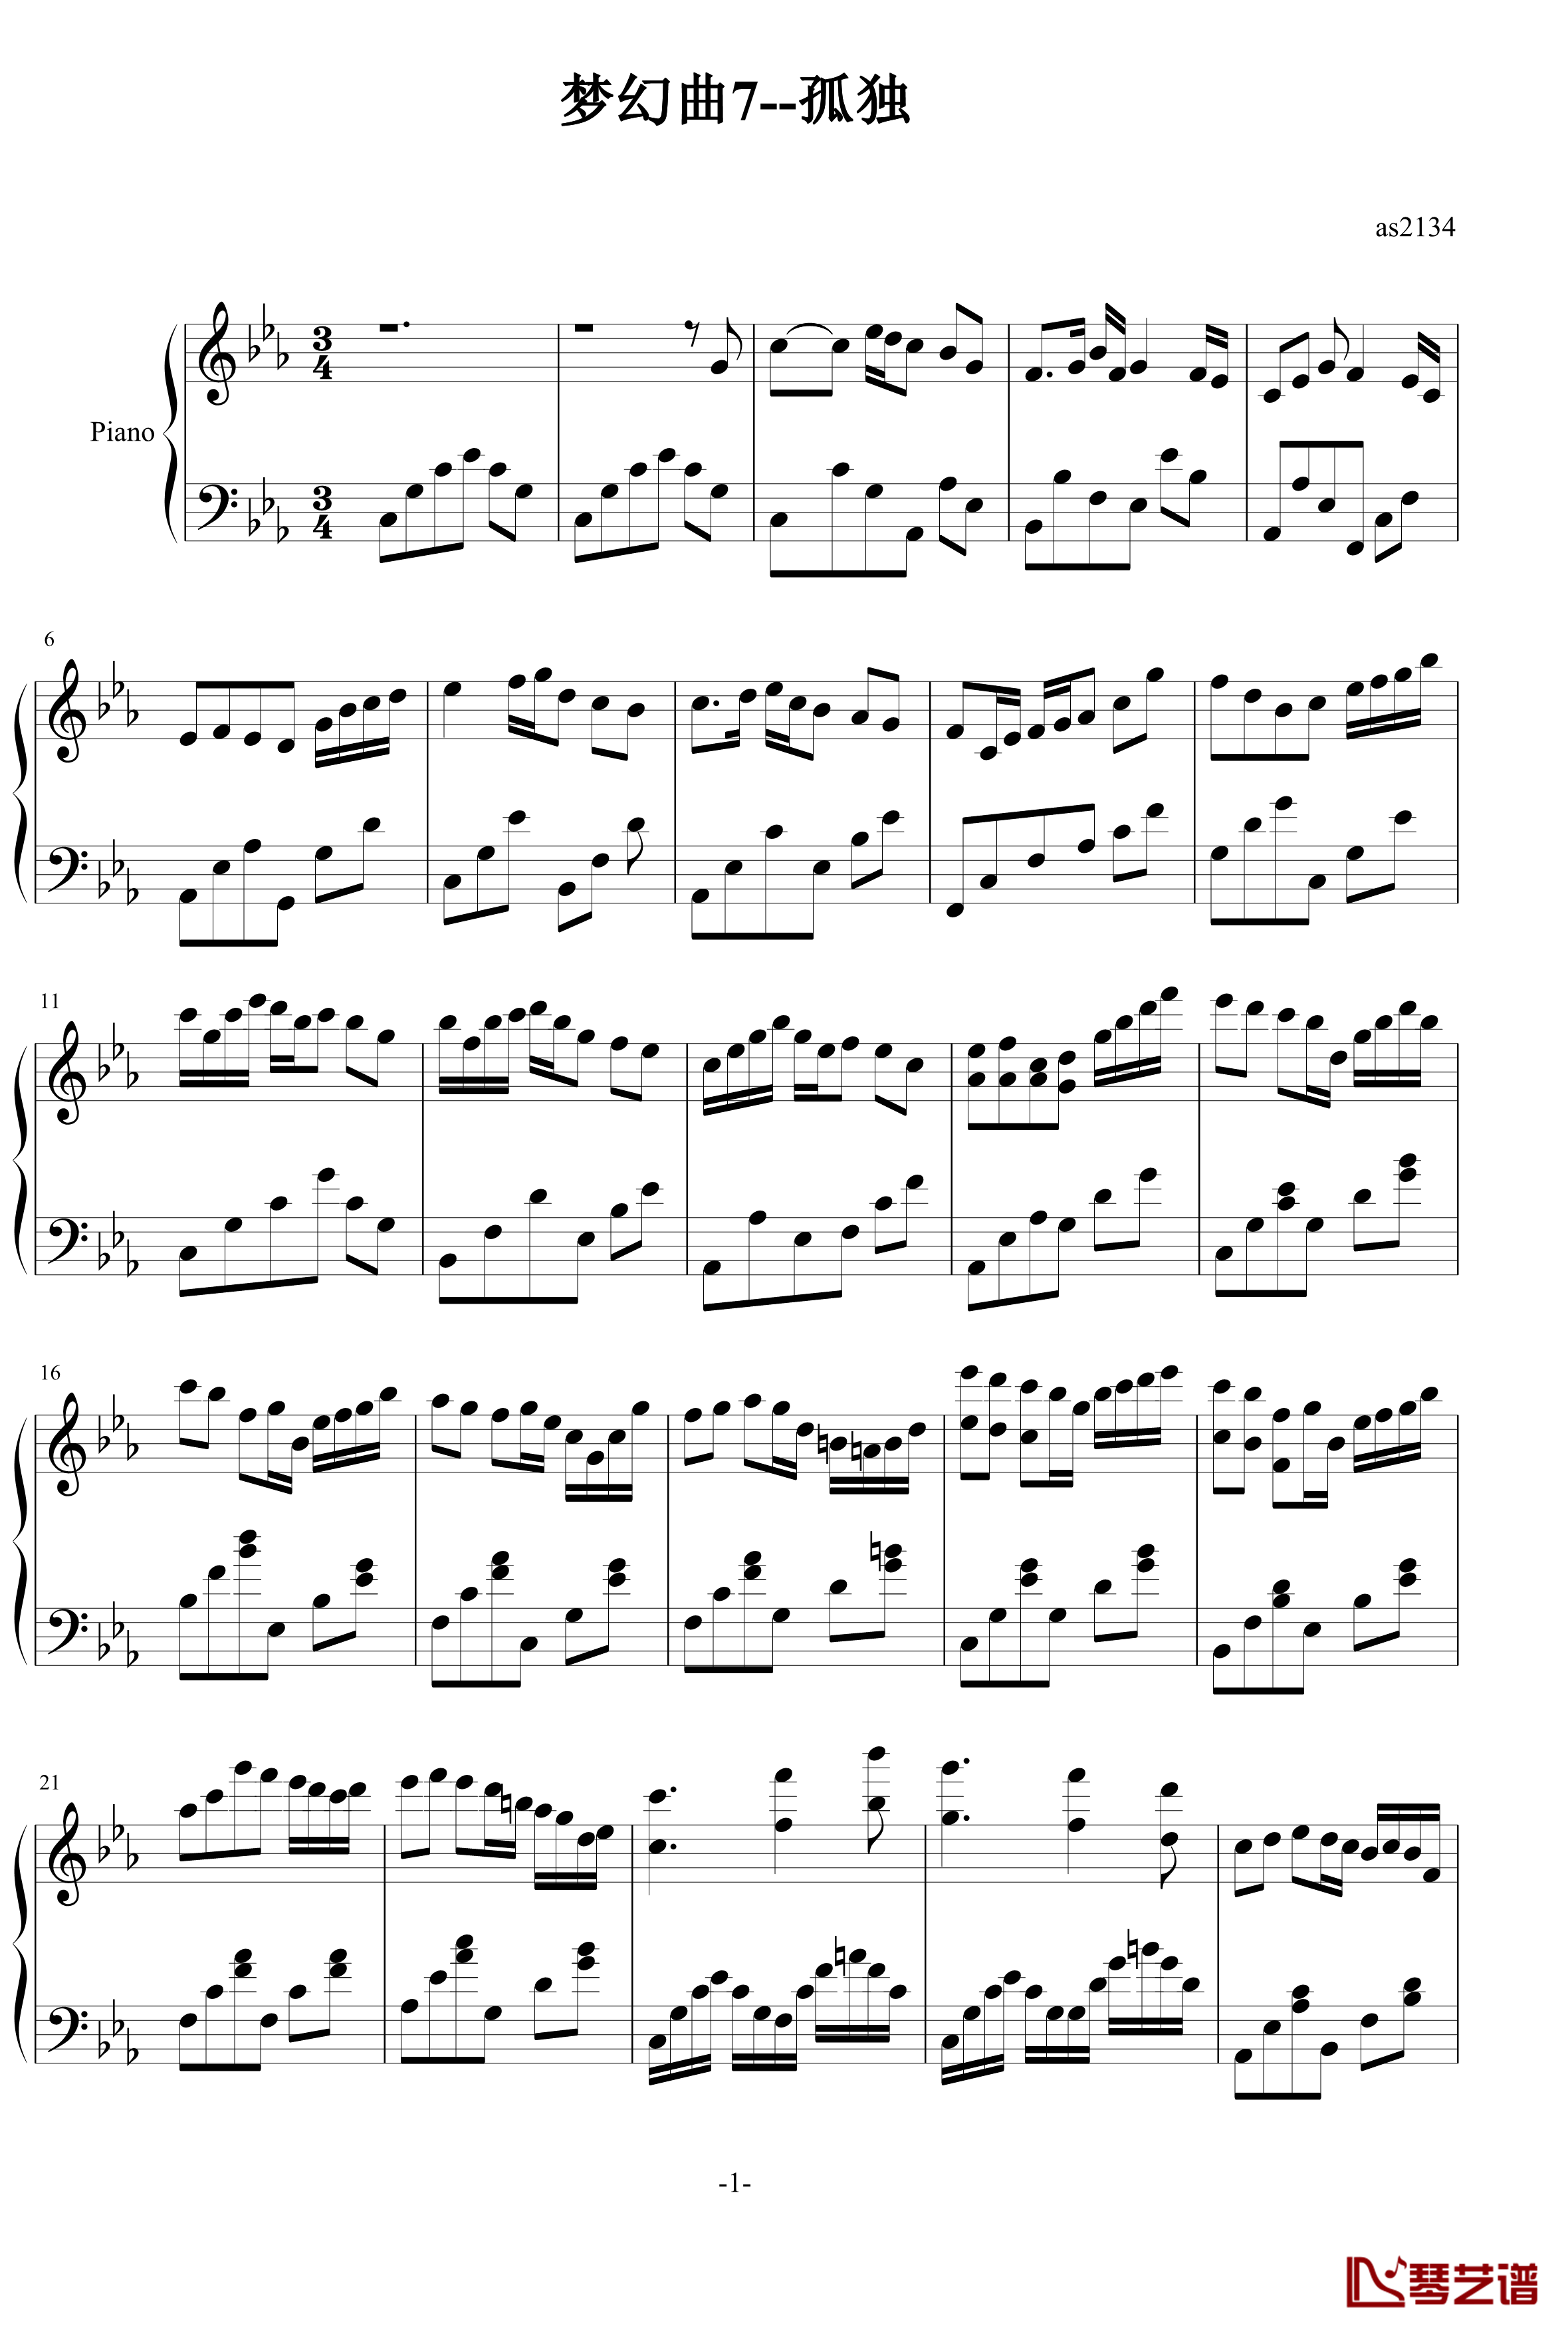 梦幻曲7孤独钢琴谱-as21341